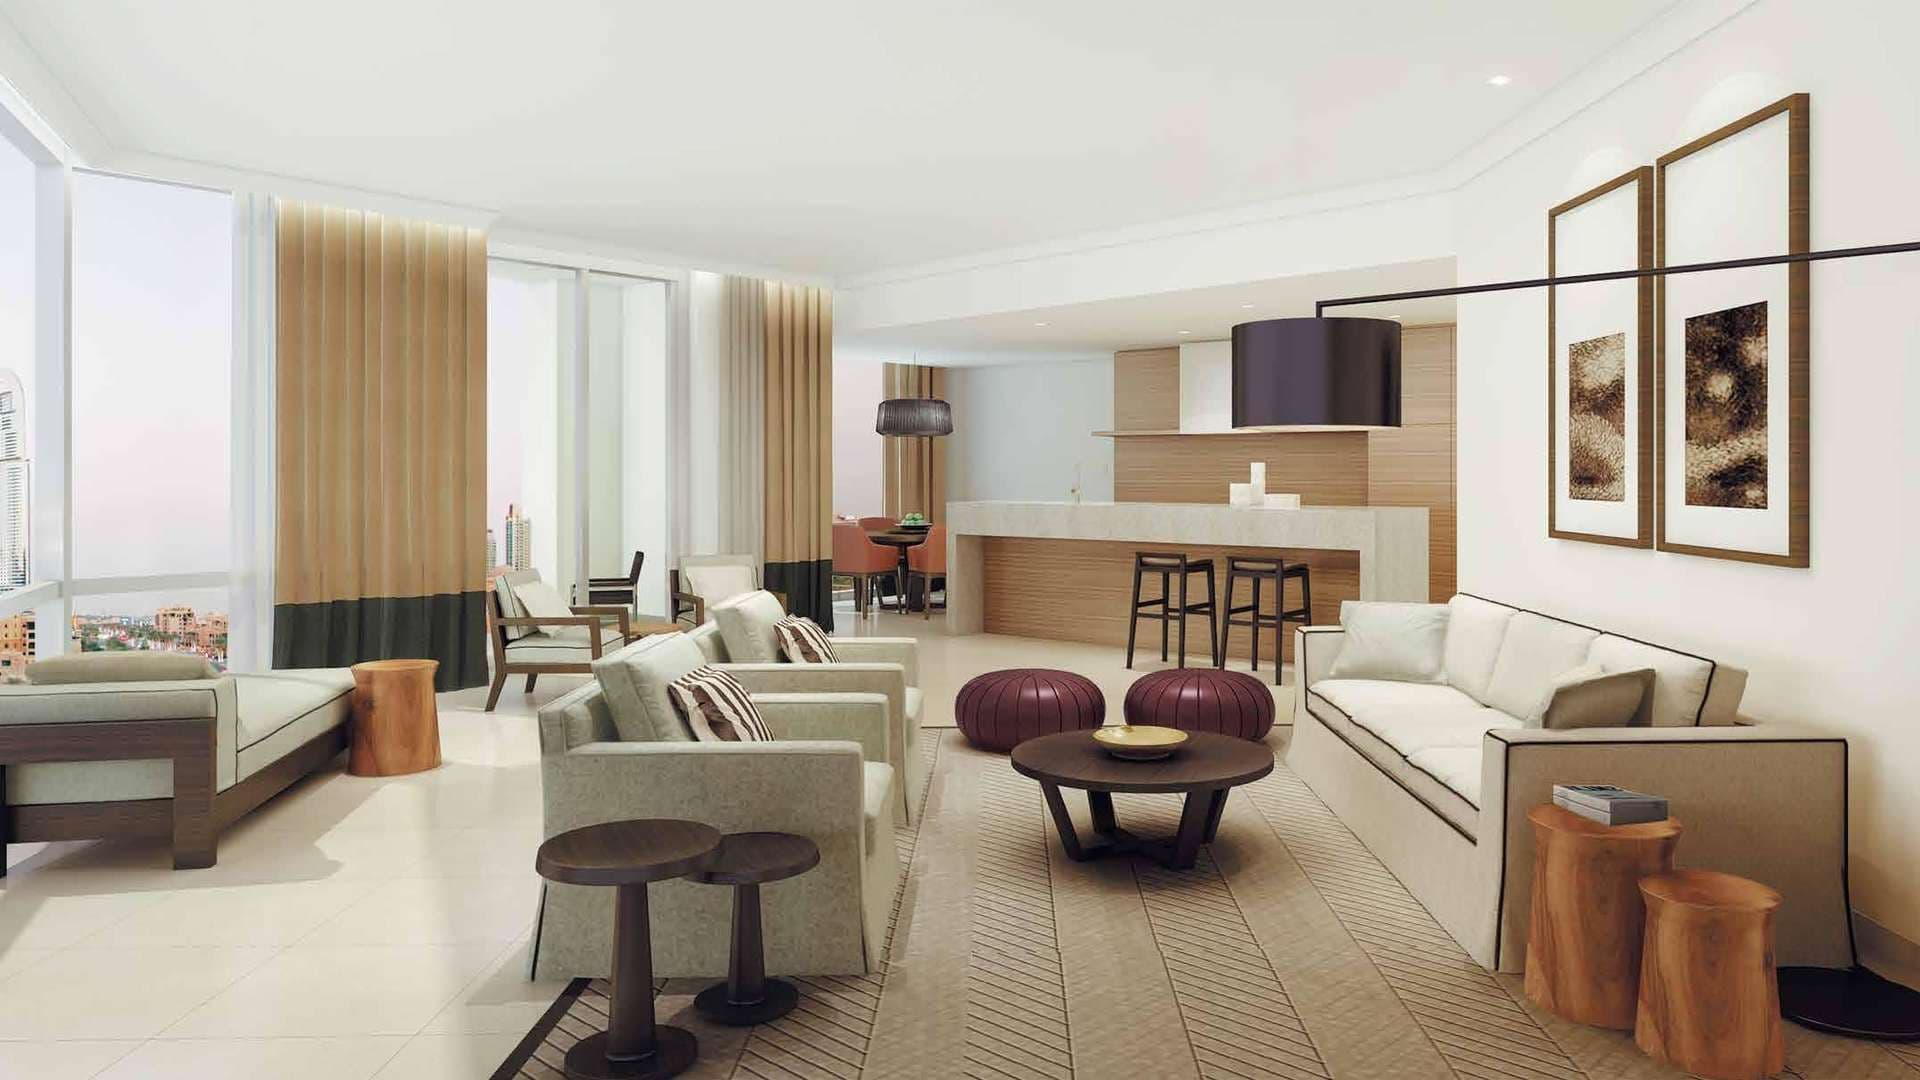 4 Bedroom Penthouse For Sale Il Primo Lp07920 2e7e2d85f588a400.jpg